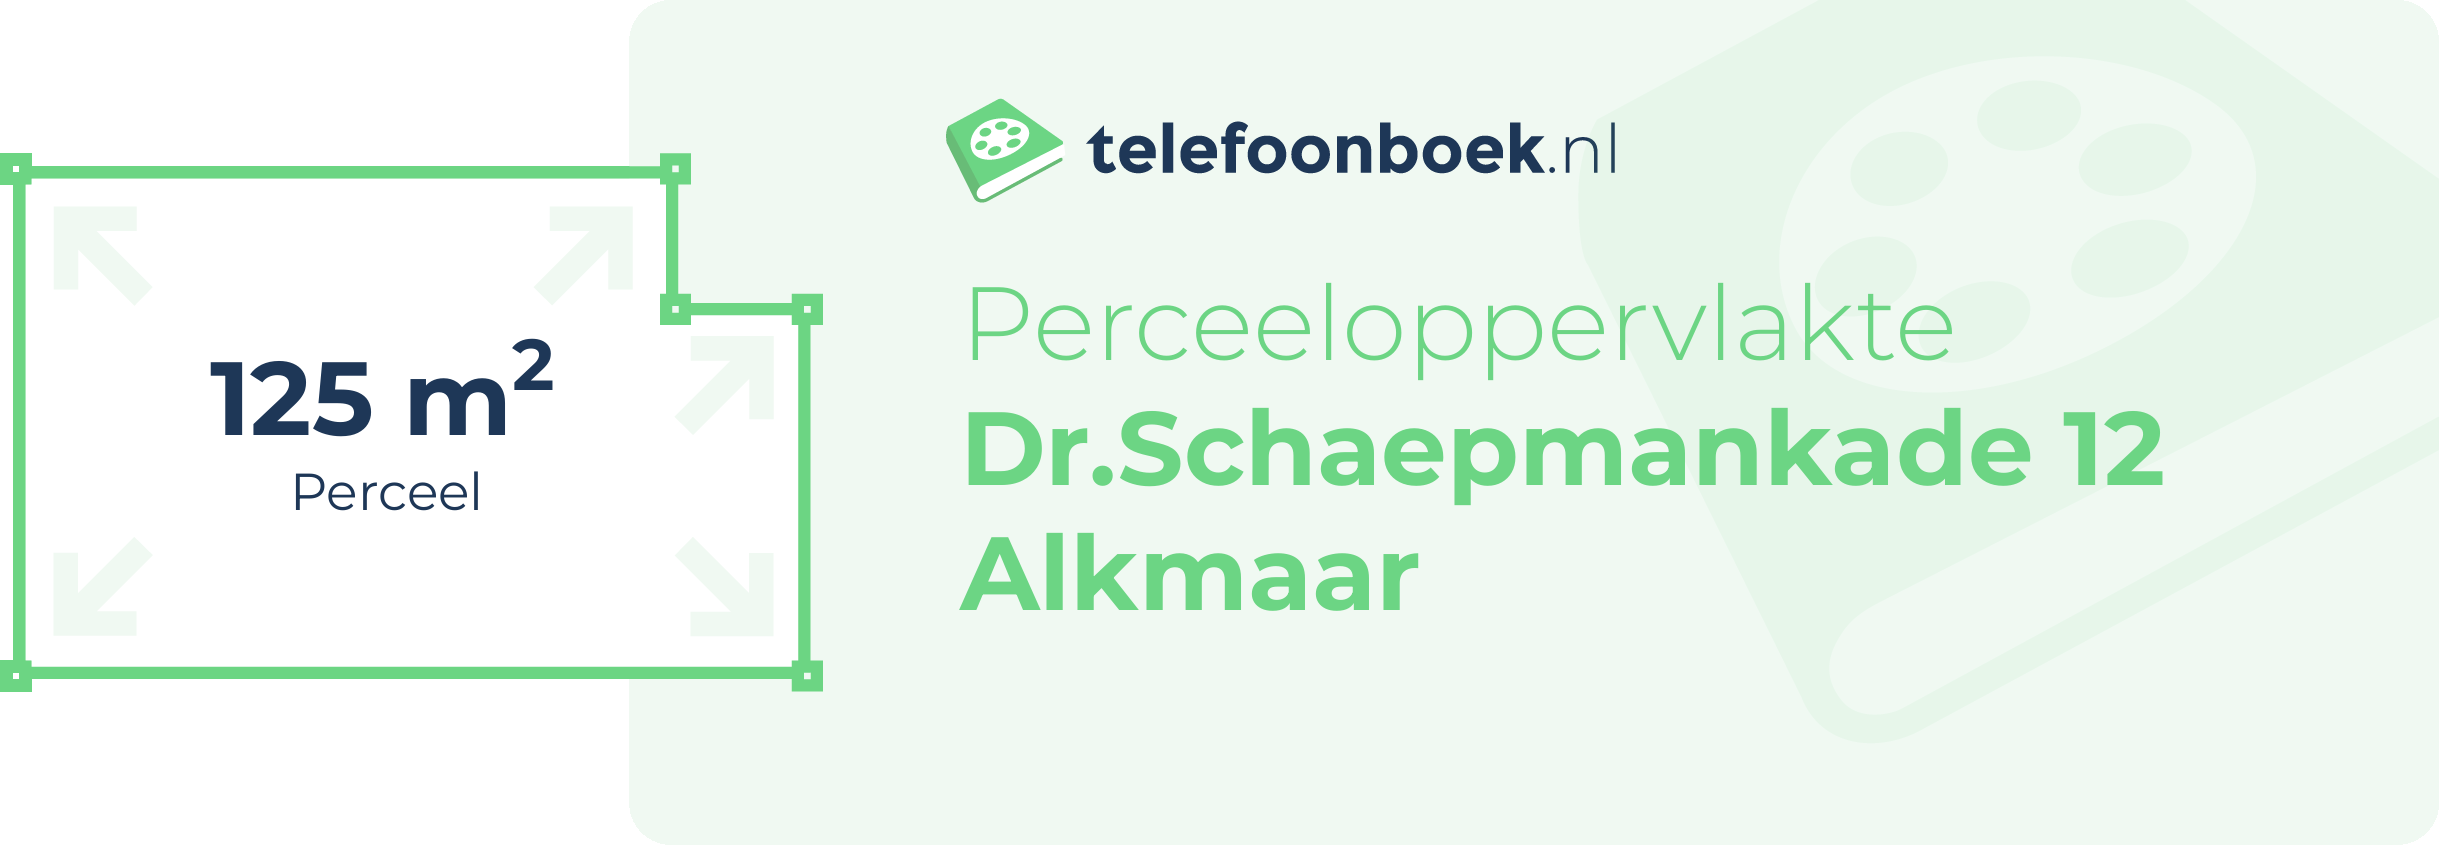 Perceeloppervlakte Dr.Schaepmankade 12 Alkmaar